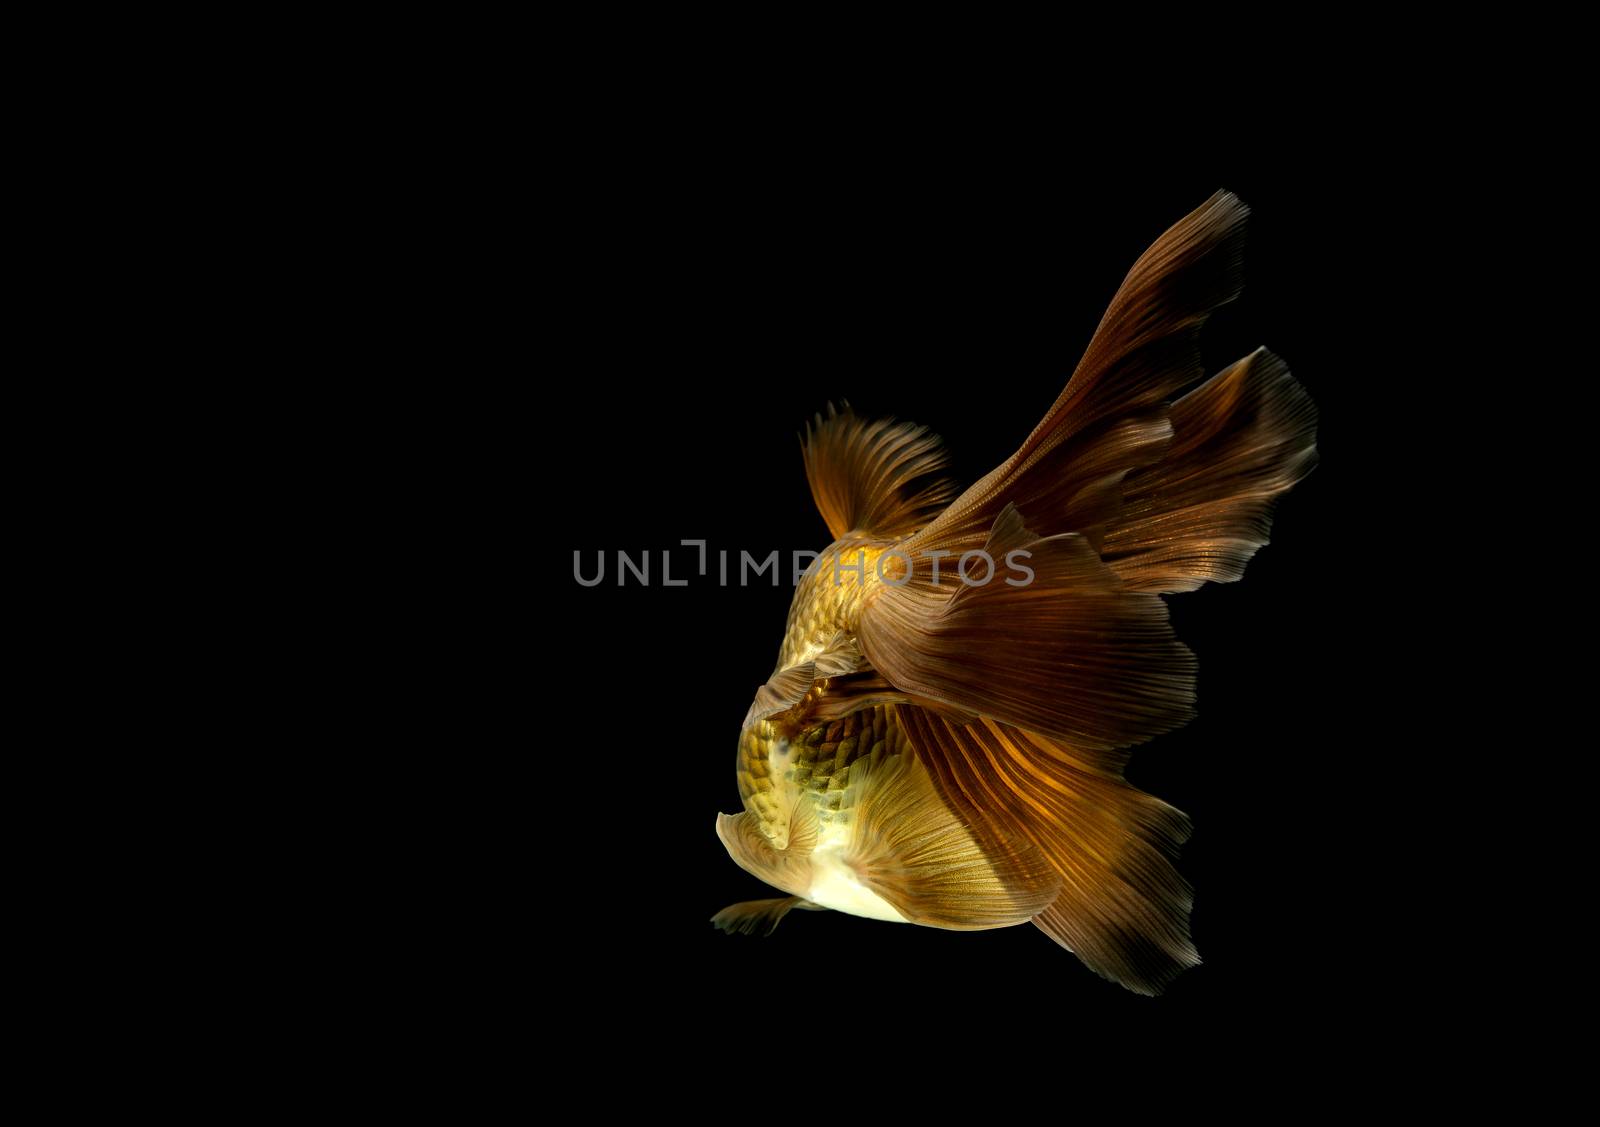 goldfish isolated on a dark black background